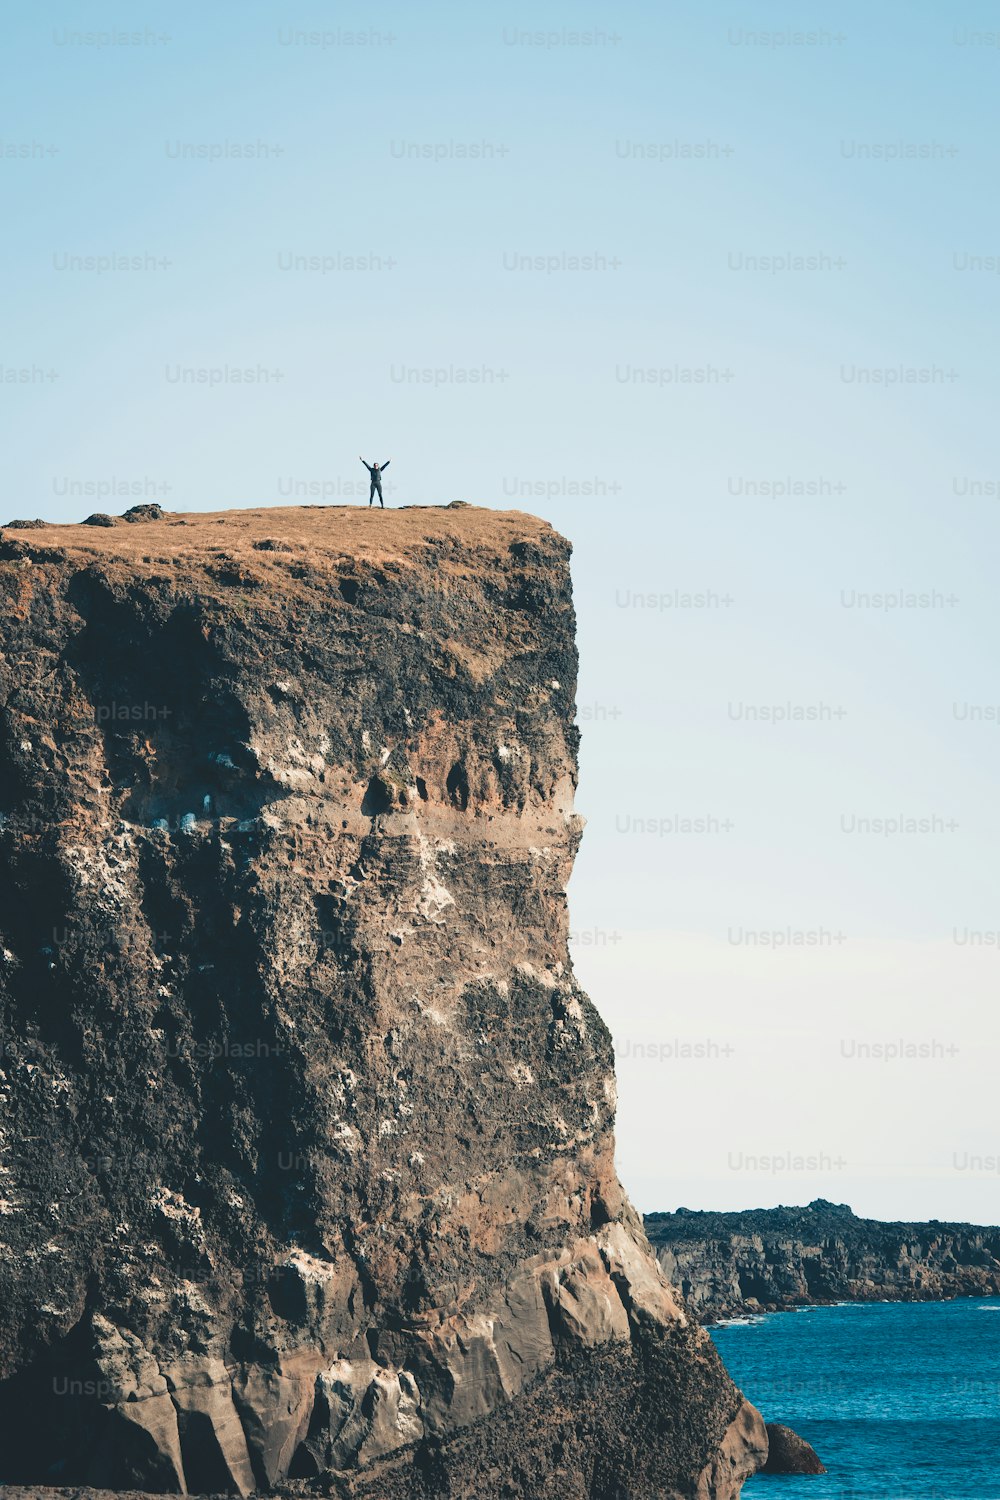 Una persona in piedi sulla cima di una scogliera vicino all'oceano